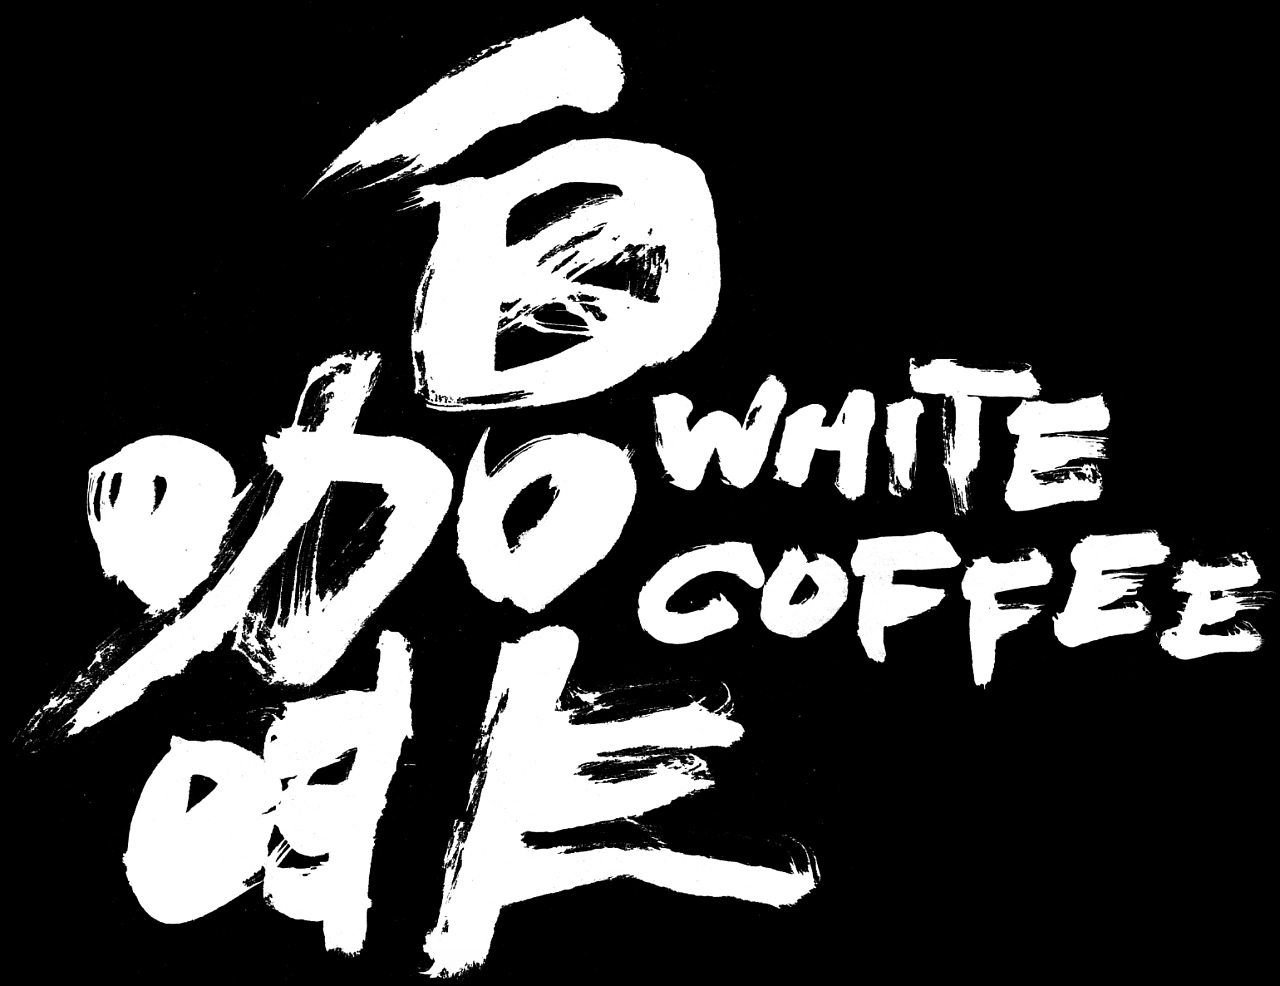 澳白咖啡字体设计图片